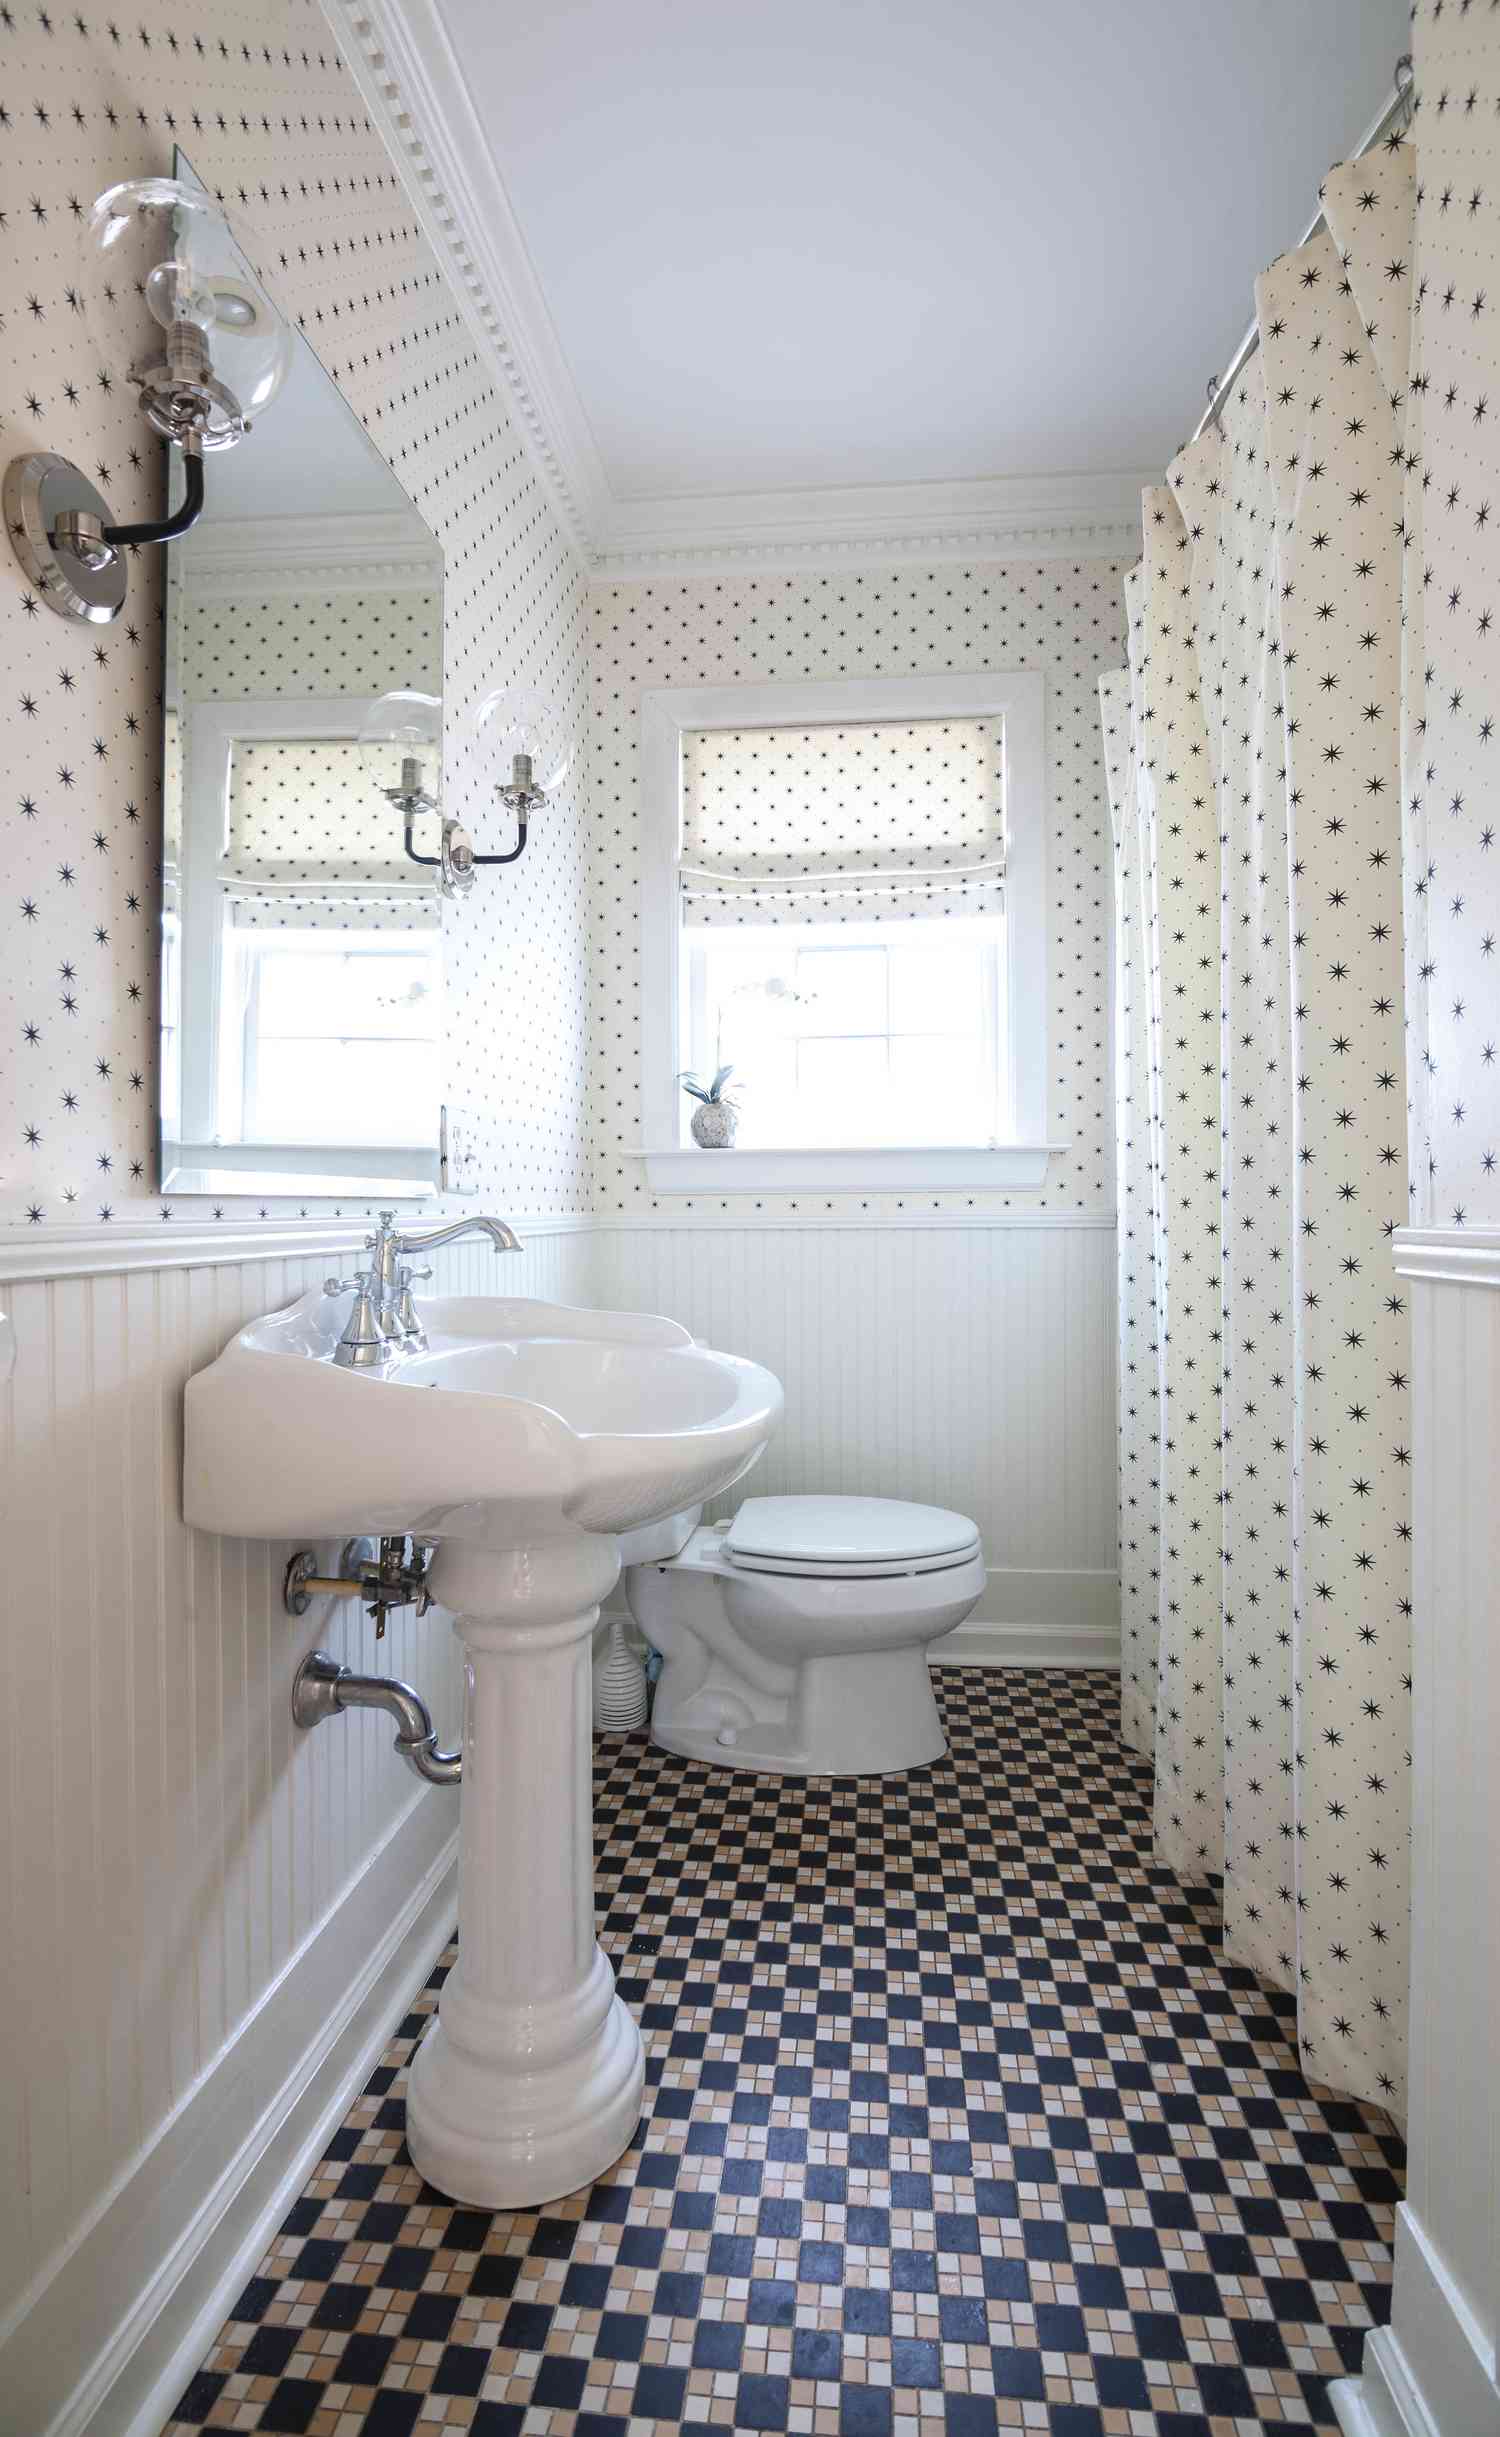 Ein Badezimmer mit gemischten Mustern